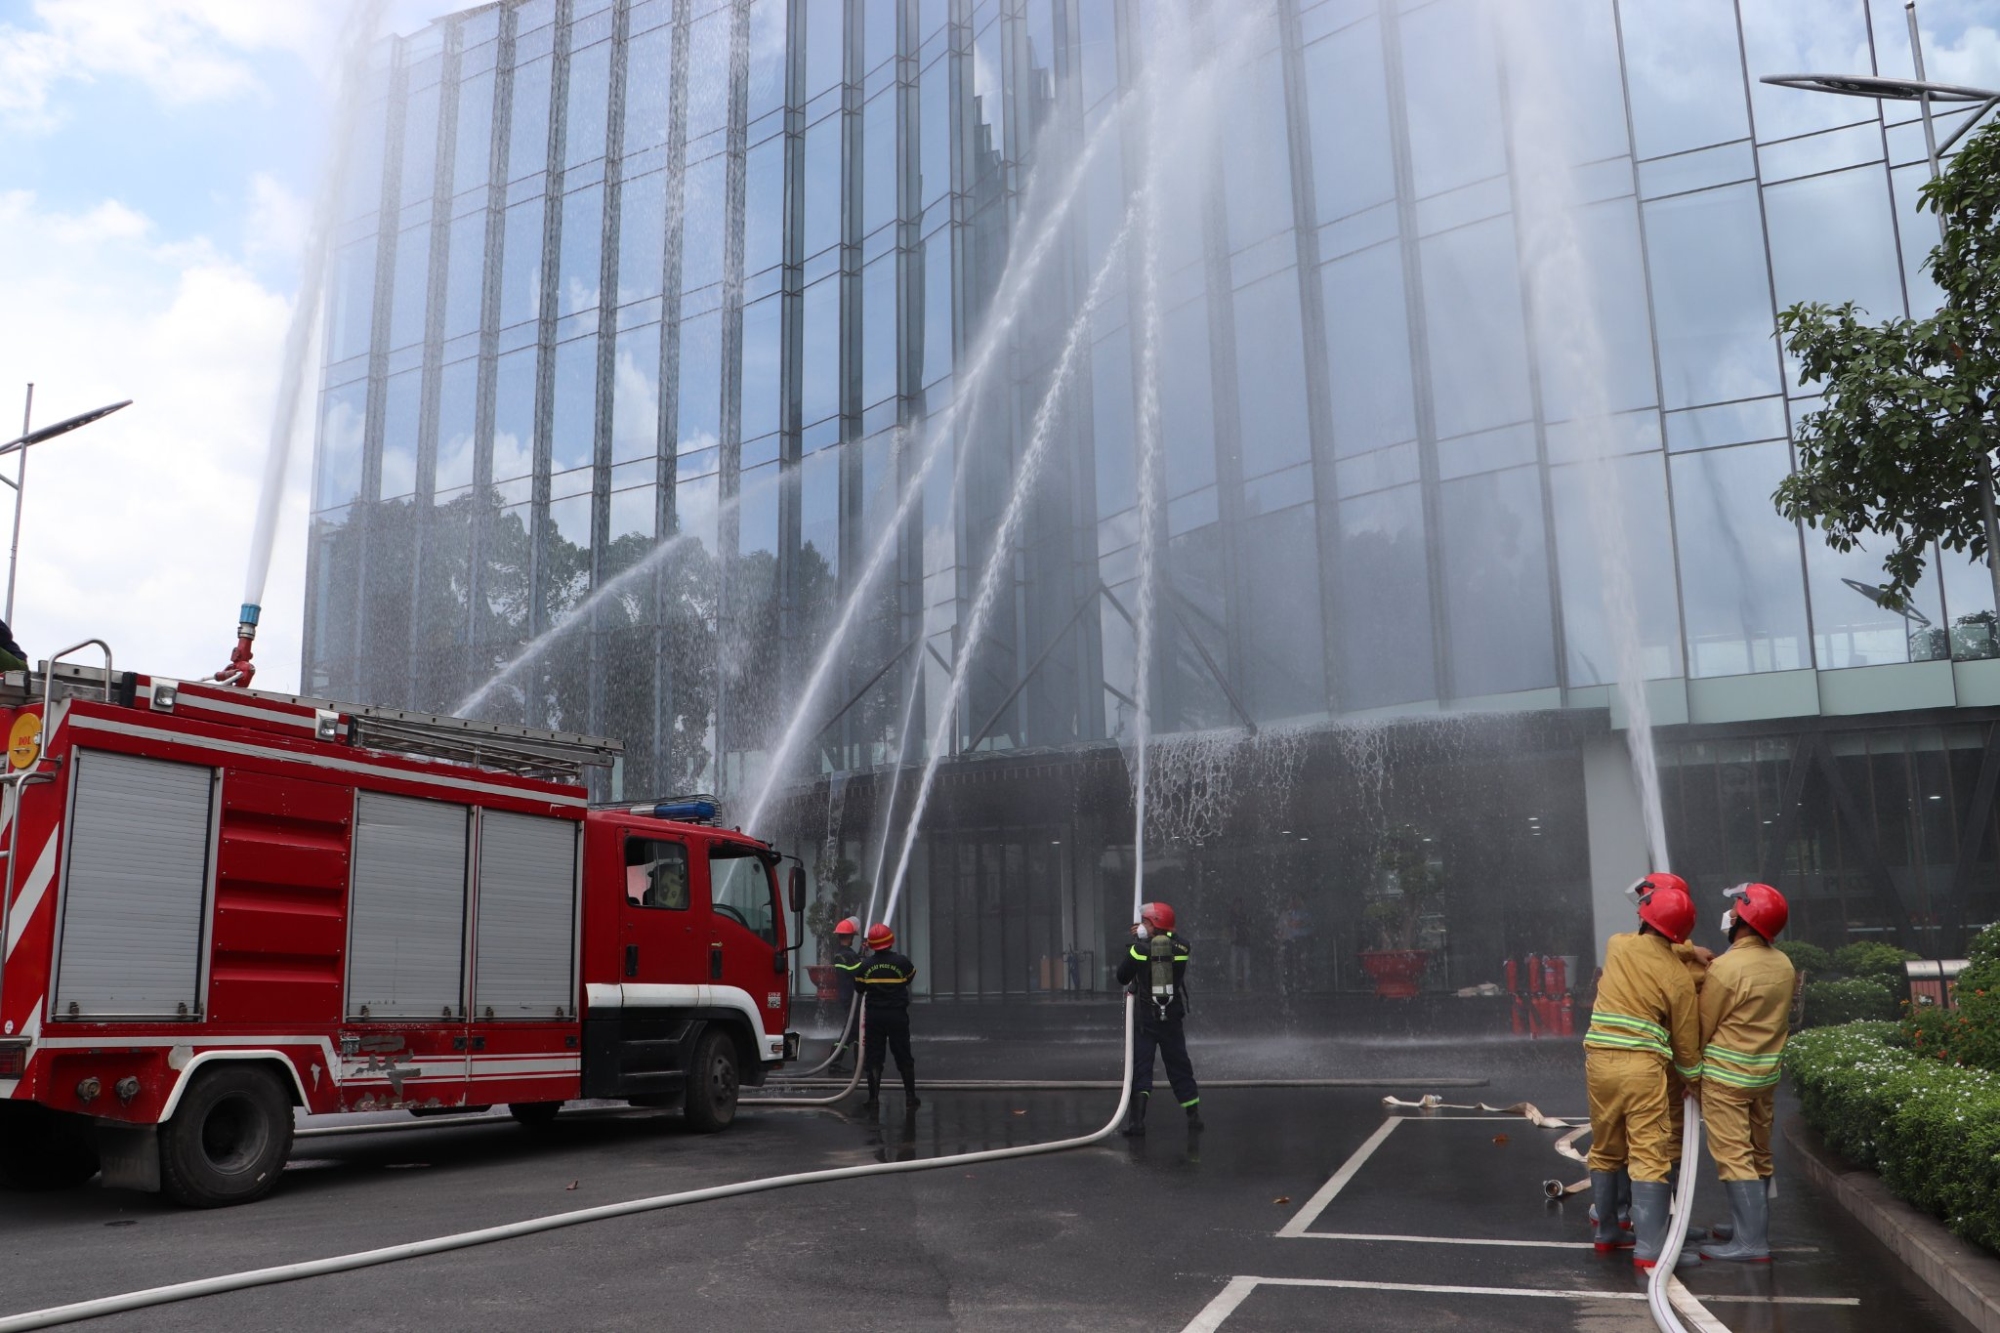 Đội PCCC cơ sở PECC2 phối hợp cùng với Lực lượng Cảnh sát PCCC và CNCH thành phố Thủ Đức chữa cháy bằng vòi phun nước.